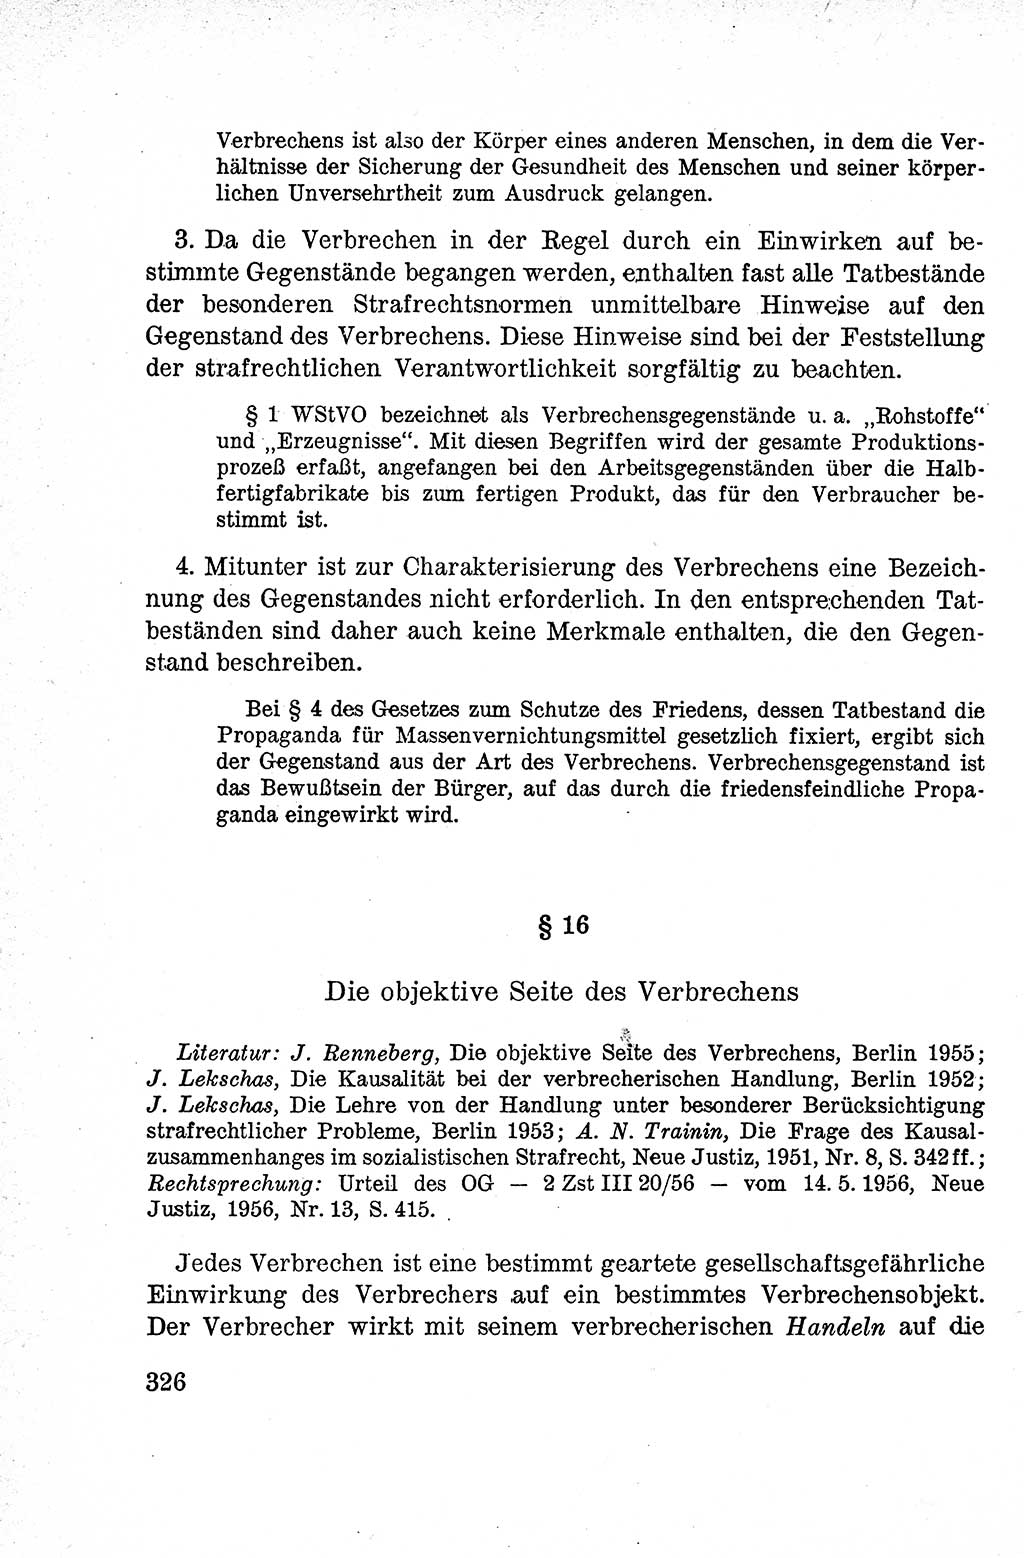 Lehrbuch des Strafrechts der Deutschen Demokratischen Republik (DDR), Allgemeiner Teil 1959, Seite 326 (Lb. Strafr. DDR AT 1959, S. 326)